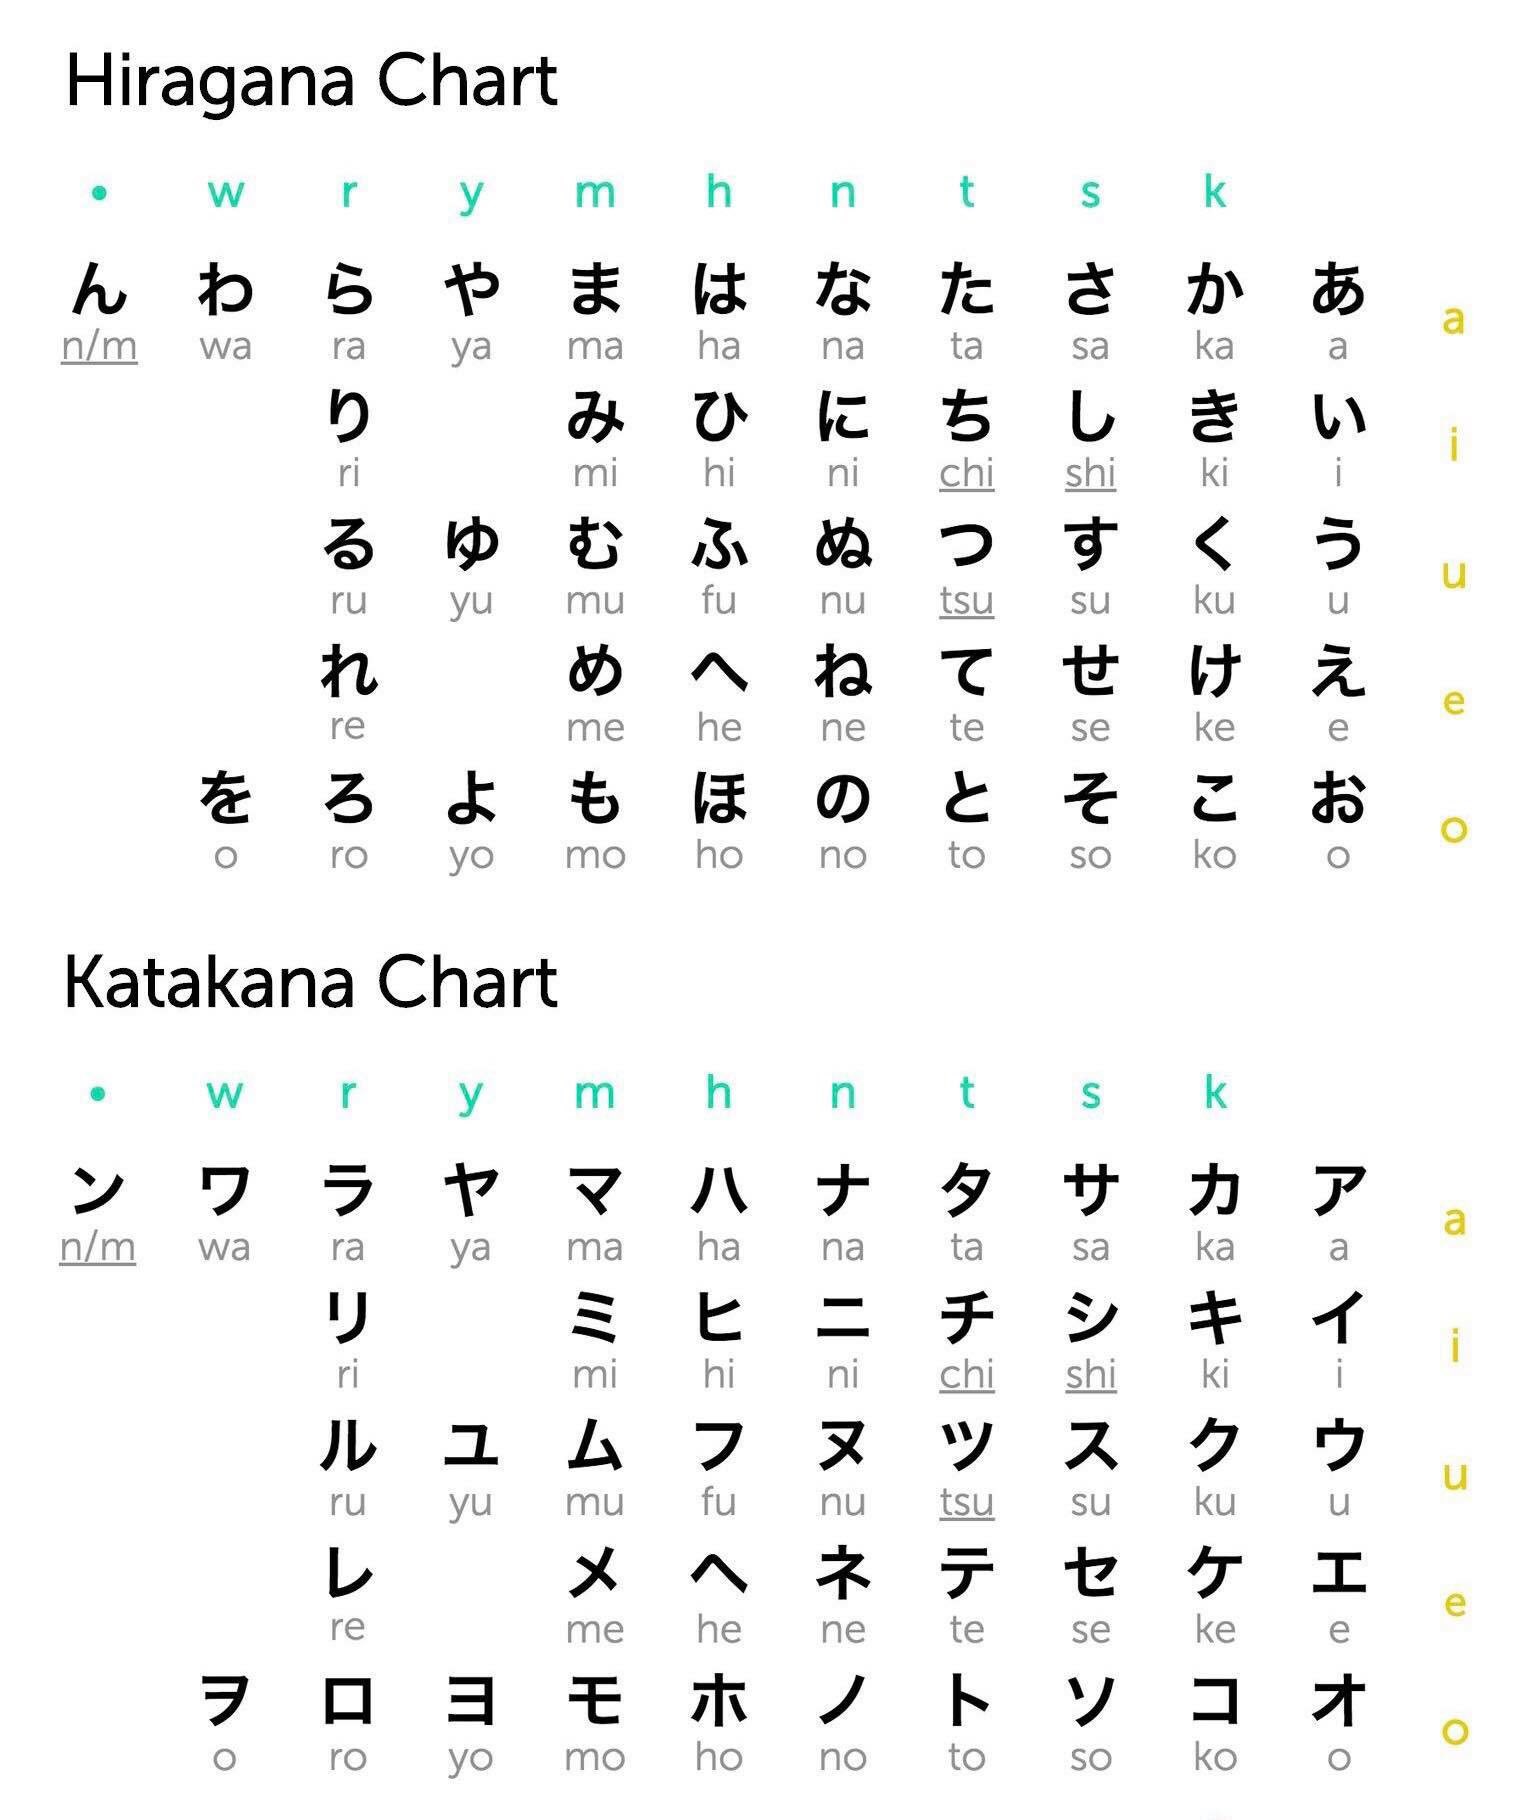 عدد حروف اللغة اليابانية 